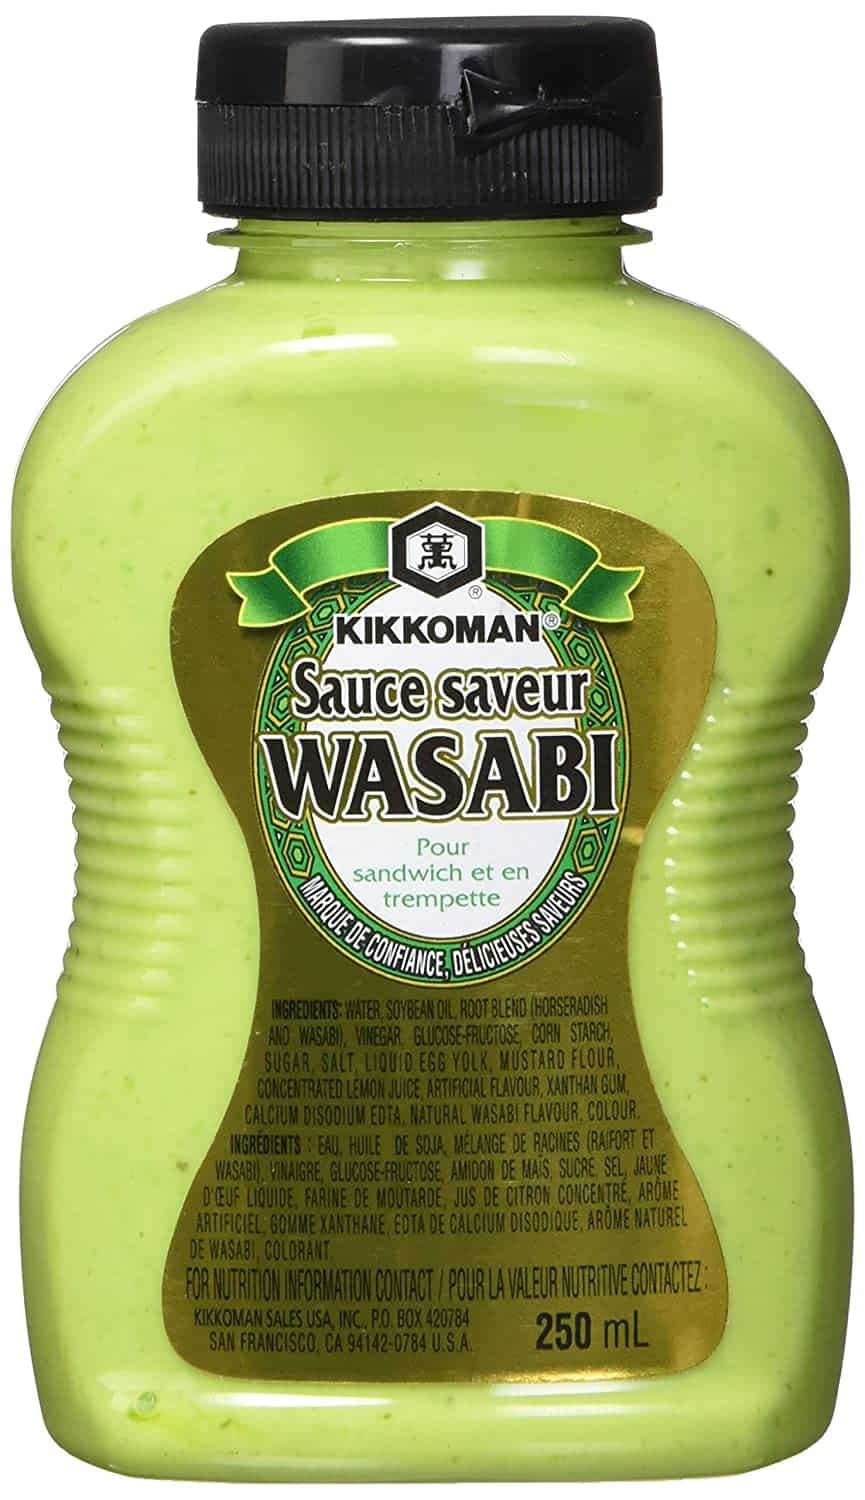 salsa wasabi kikkoman